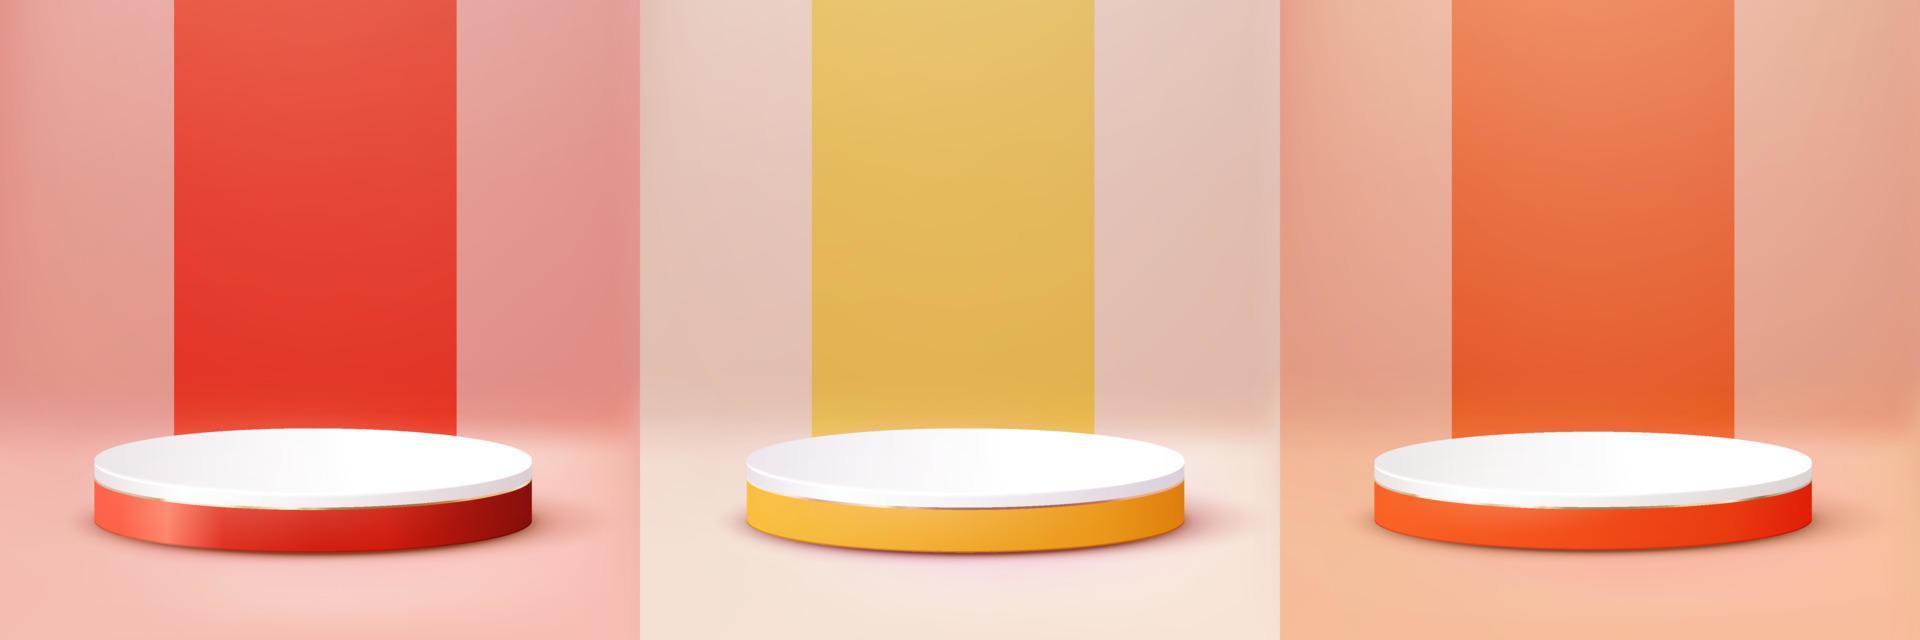 gelb orange rotes podium. abstrakter Szenenhintergrund. produktpräsentation, mock-up, kosmetisches produkt zeigen, leeres podium, bühnenpodest oder plattform. 3D-Vektor. vektor